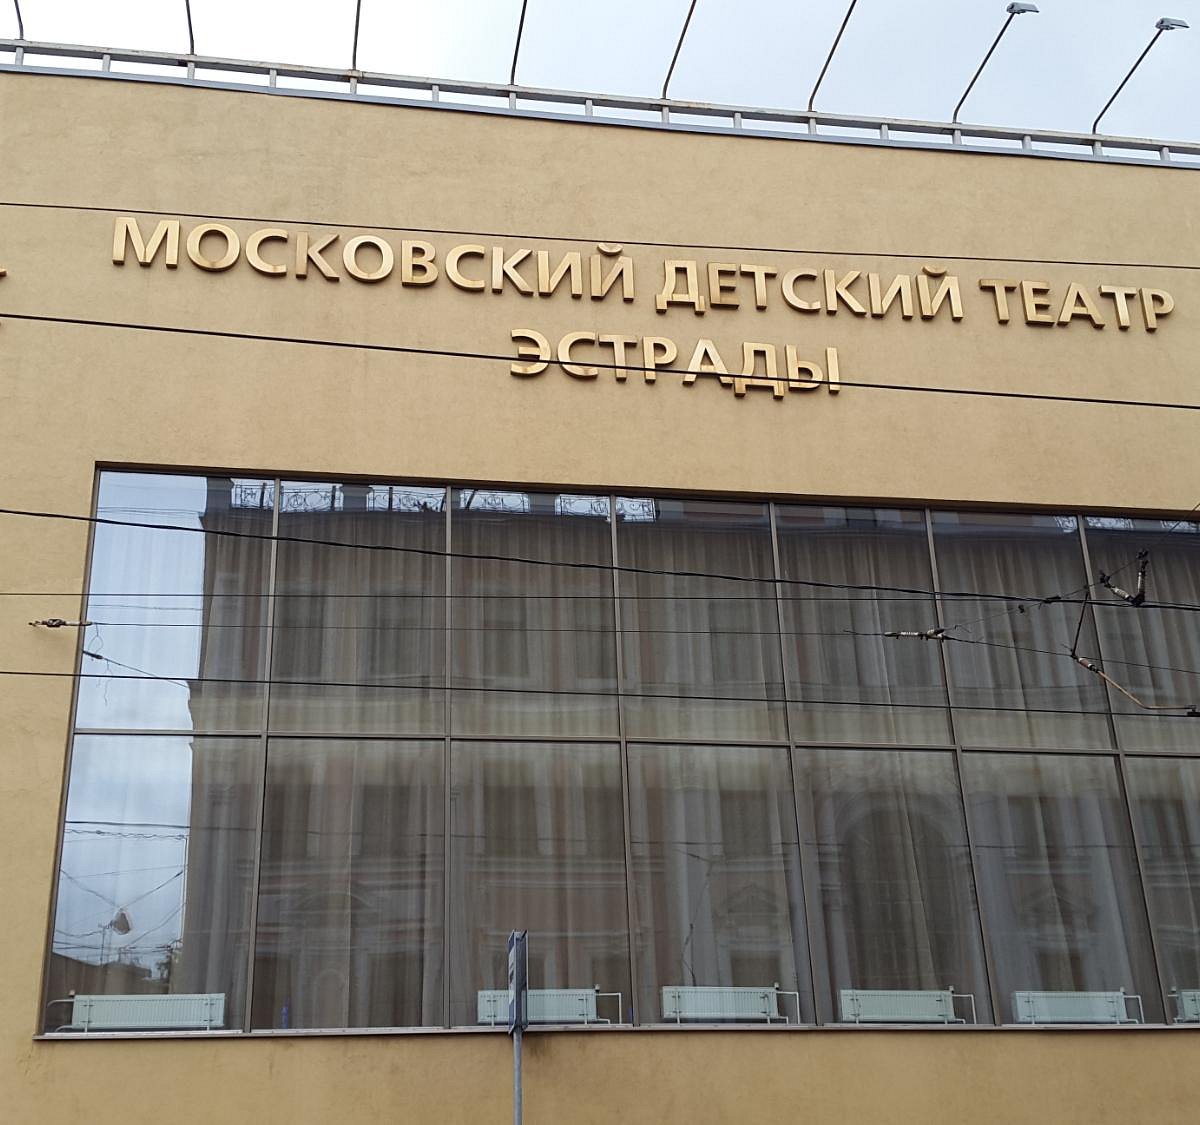 московский детский театр эстрады